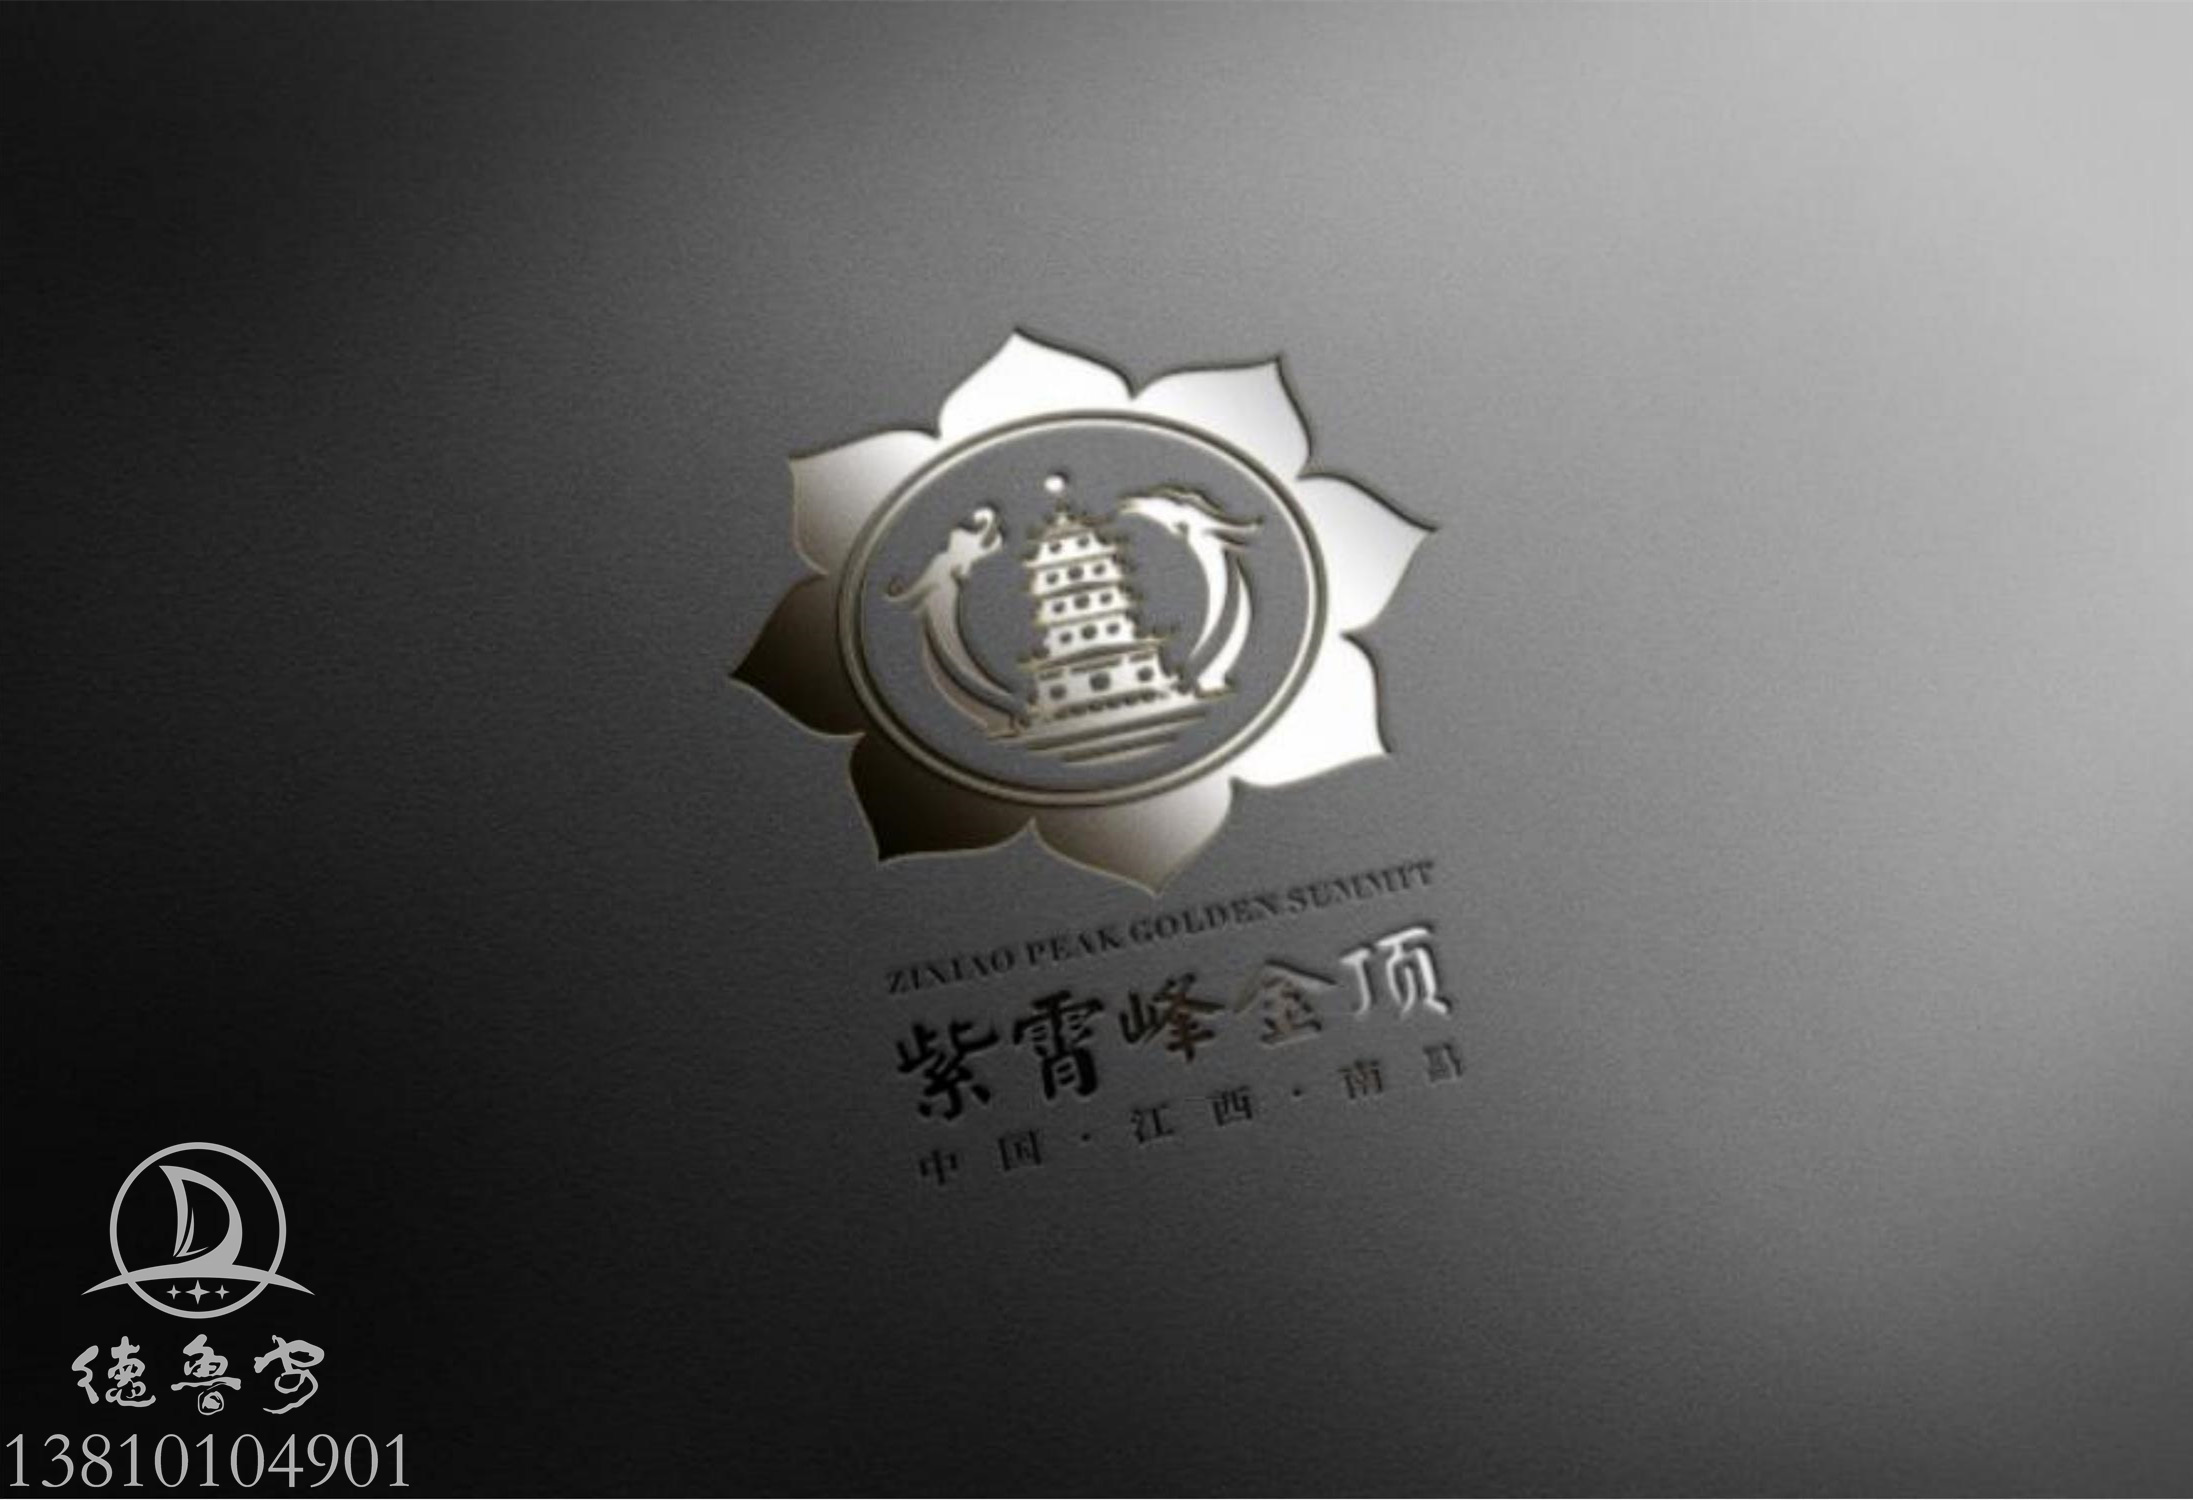 紫霄峰金顶 logo定稿汇报_32.jpg